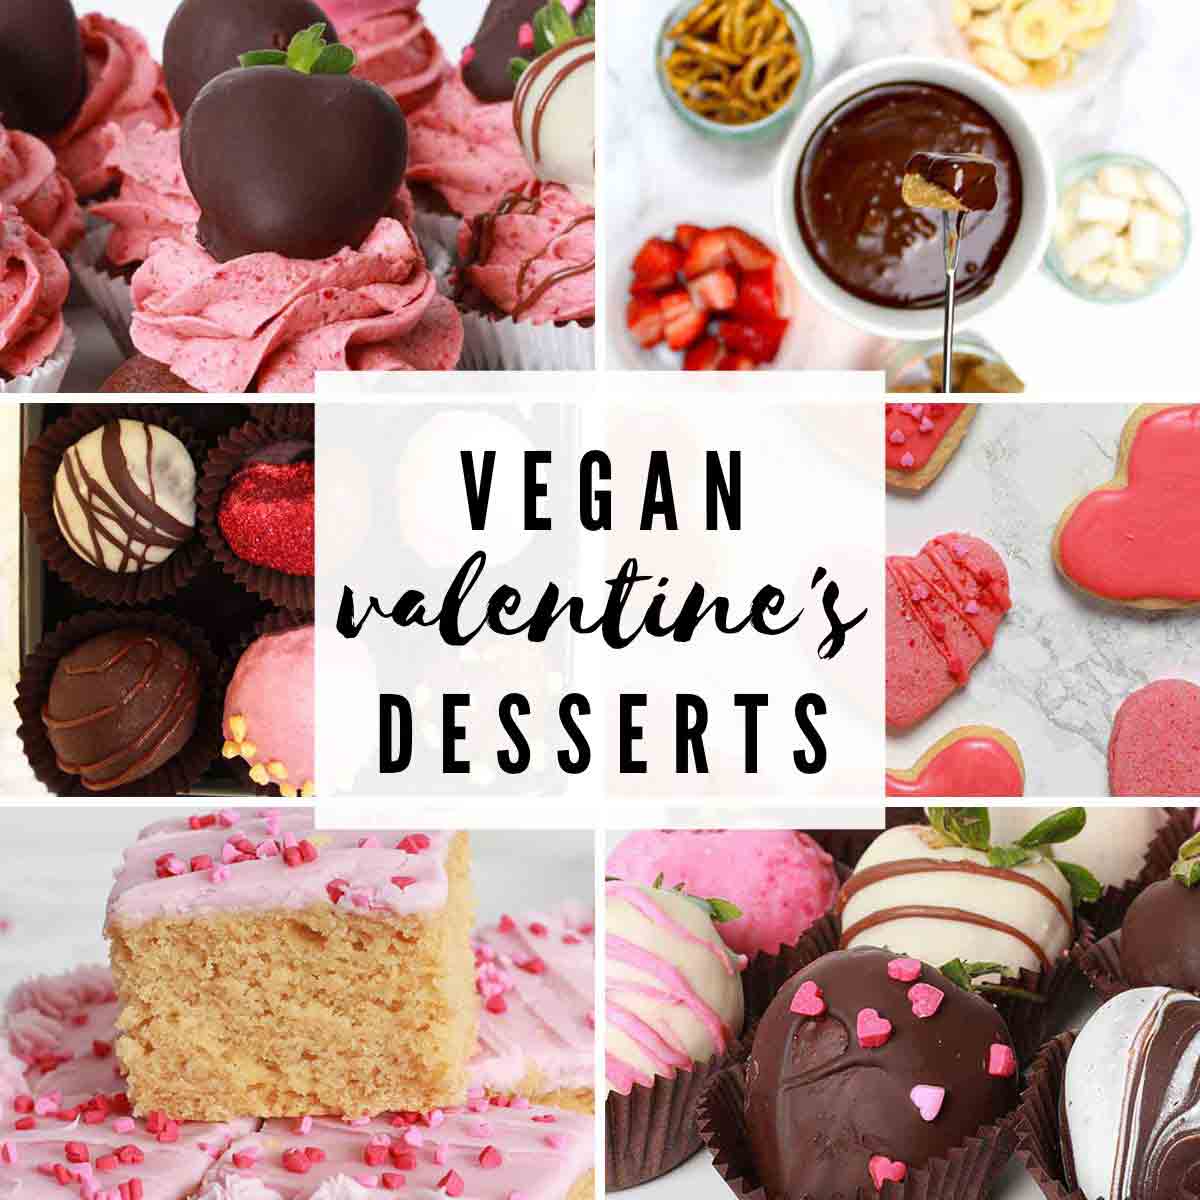 6 Images Of Vegan Valentines Desserts